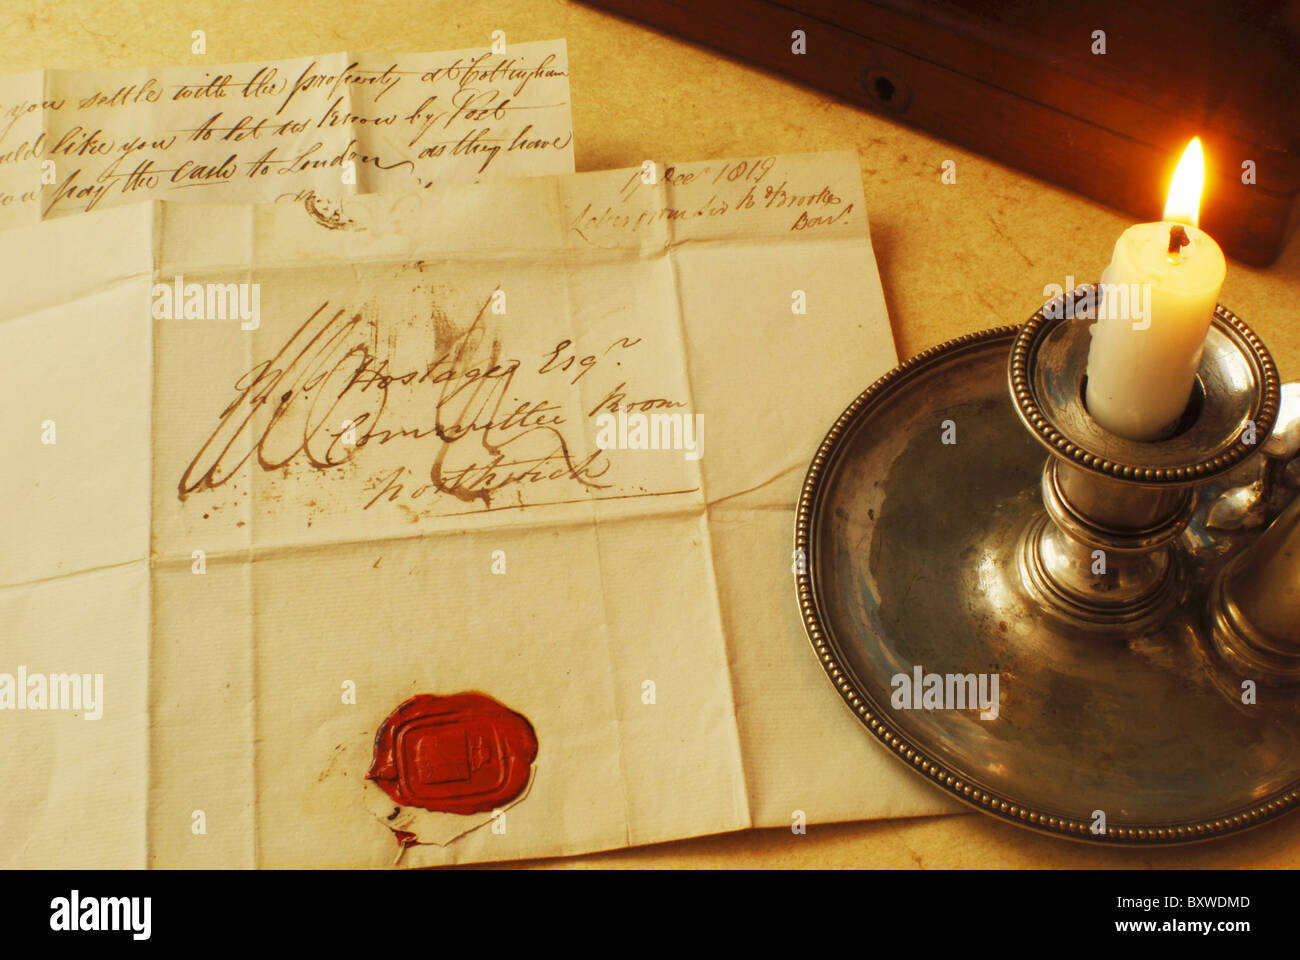 Lettura della lettera vittoriana con il sigillo rosso di Candle Light. Lettera del 1800, scritta illuminata a mano con candela. Foto Stock